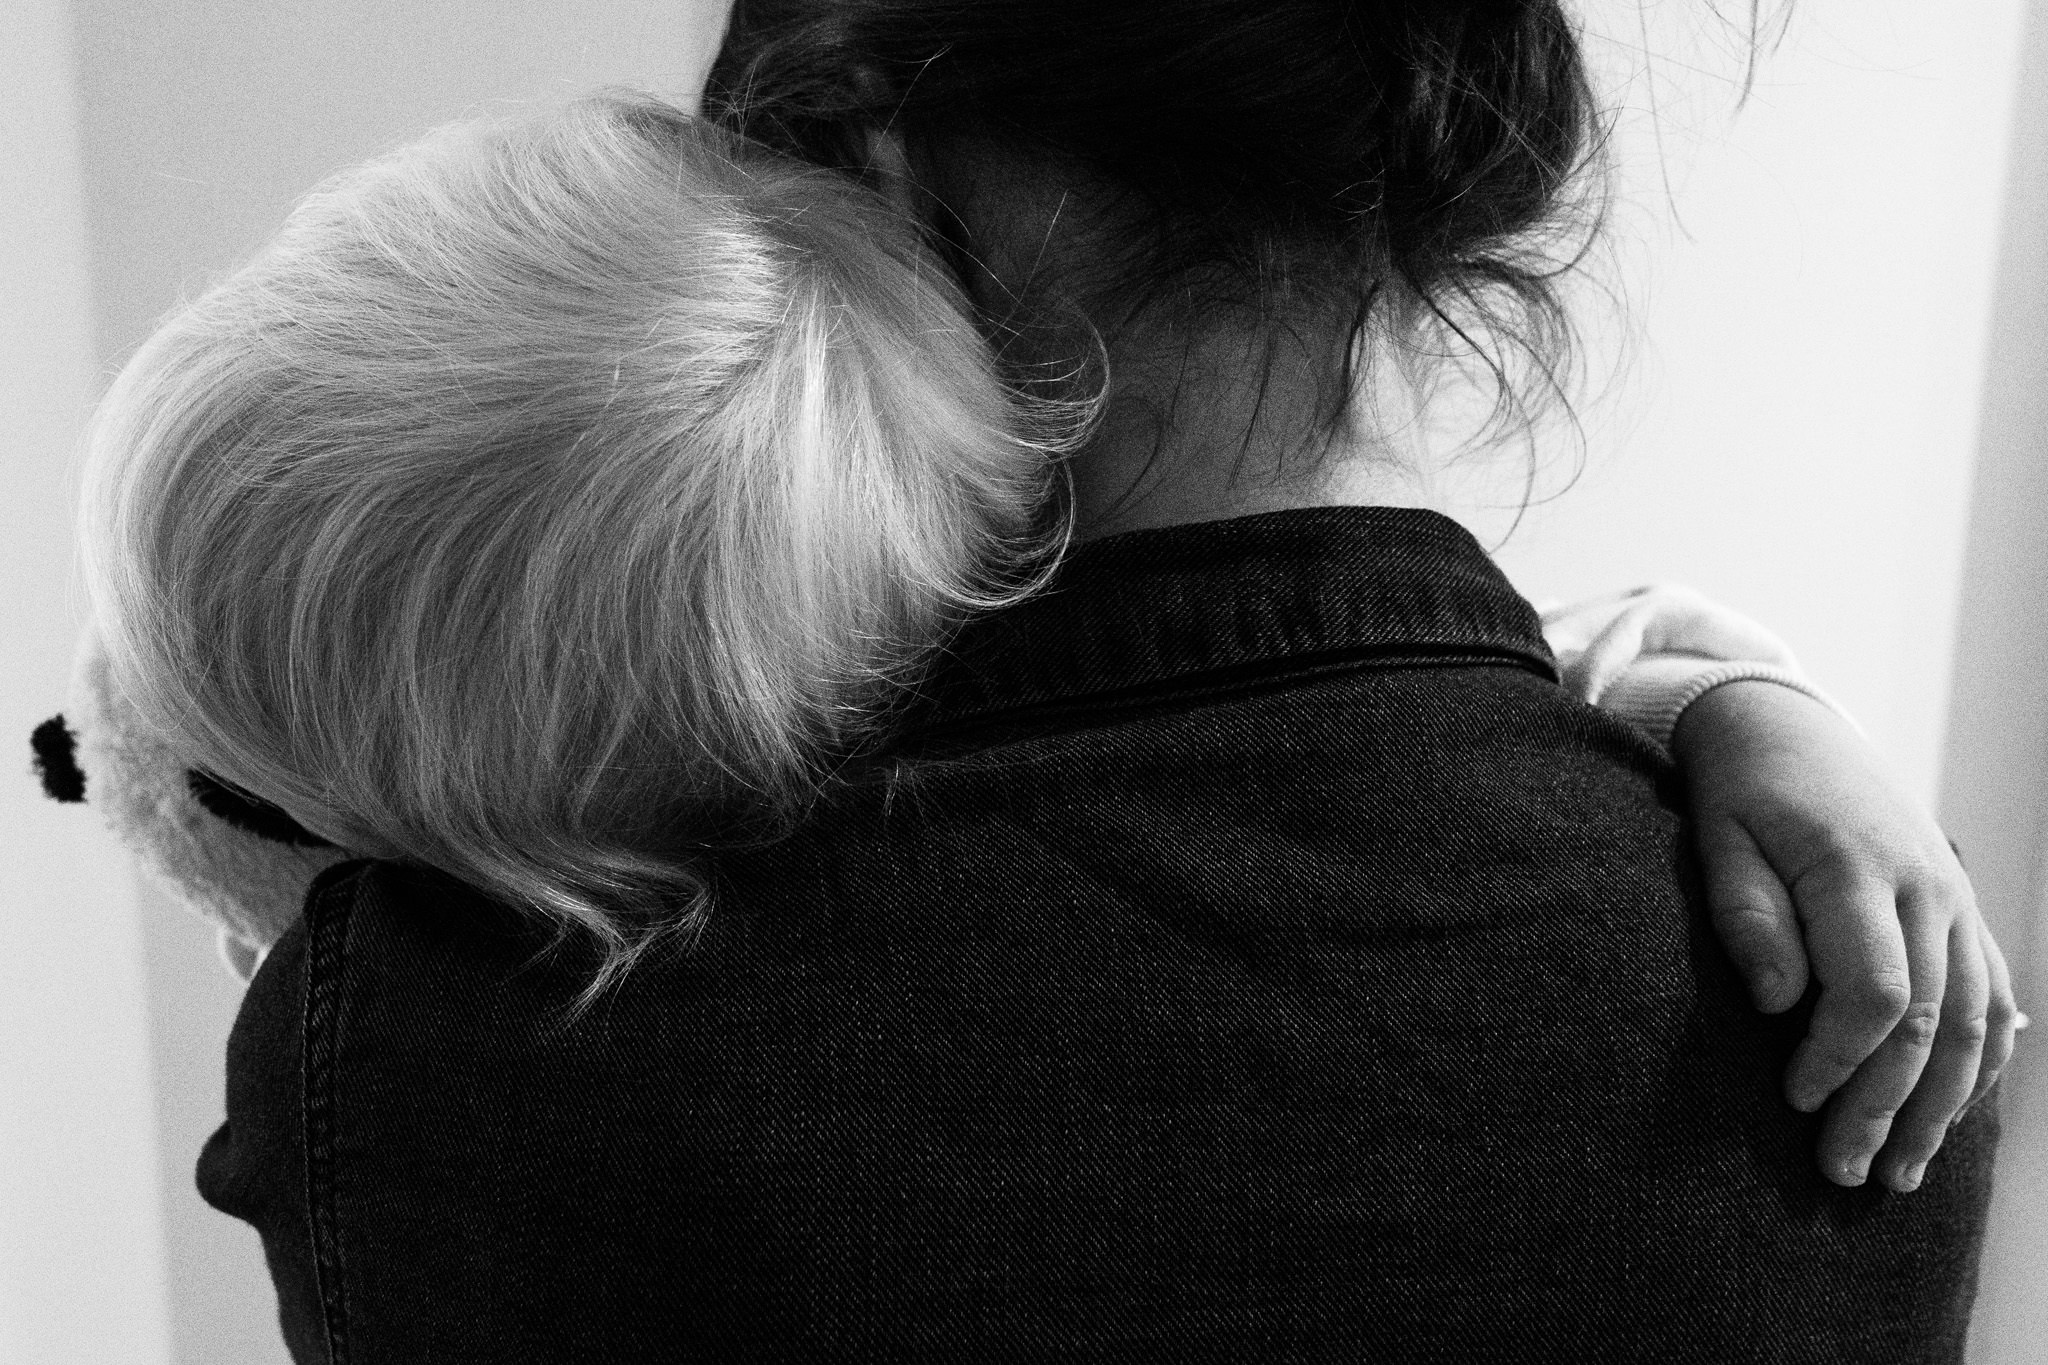 Familienreportage: Mutter hält ihr Kind auf dem Arm